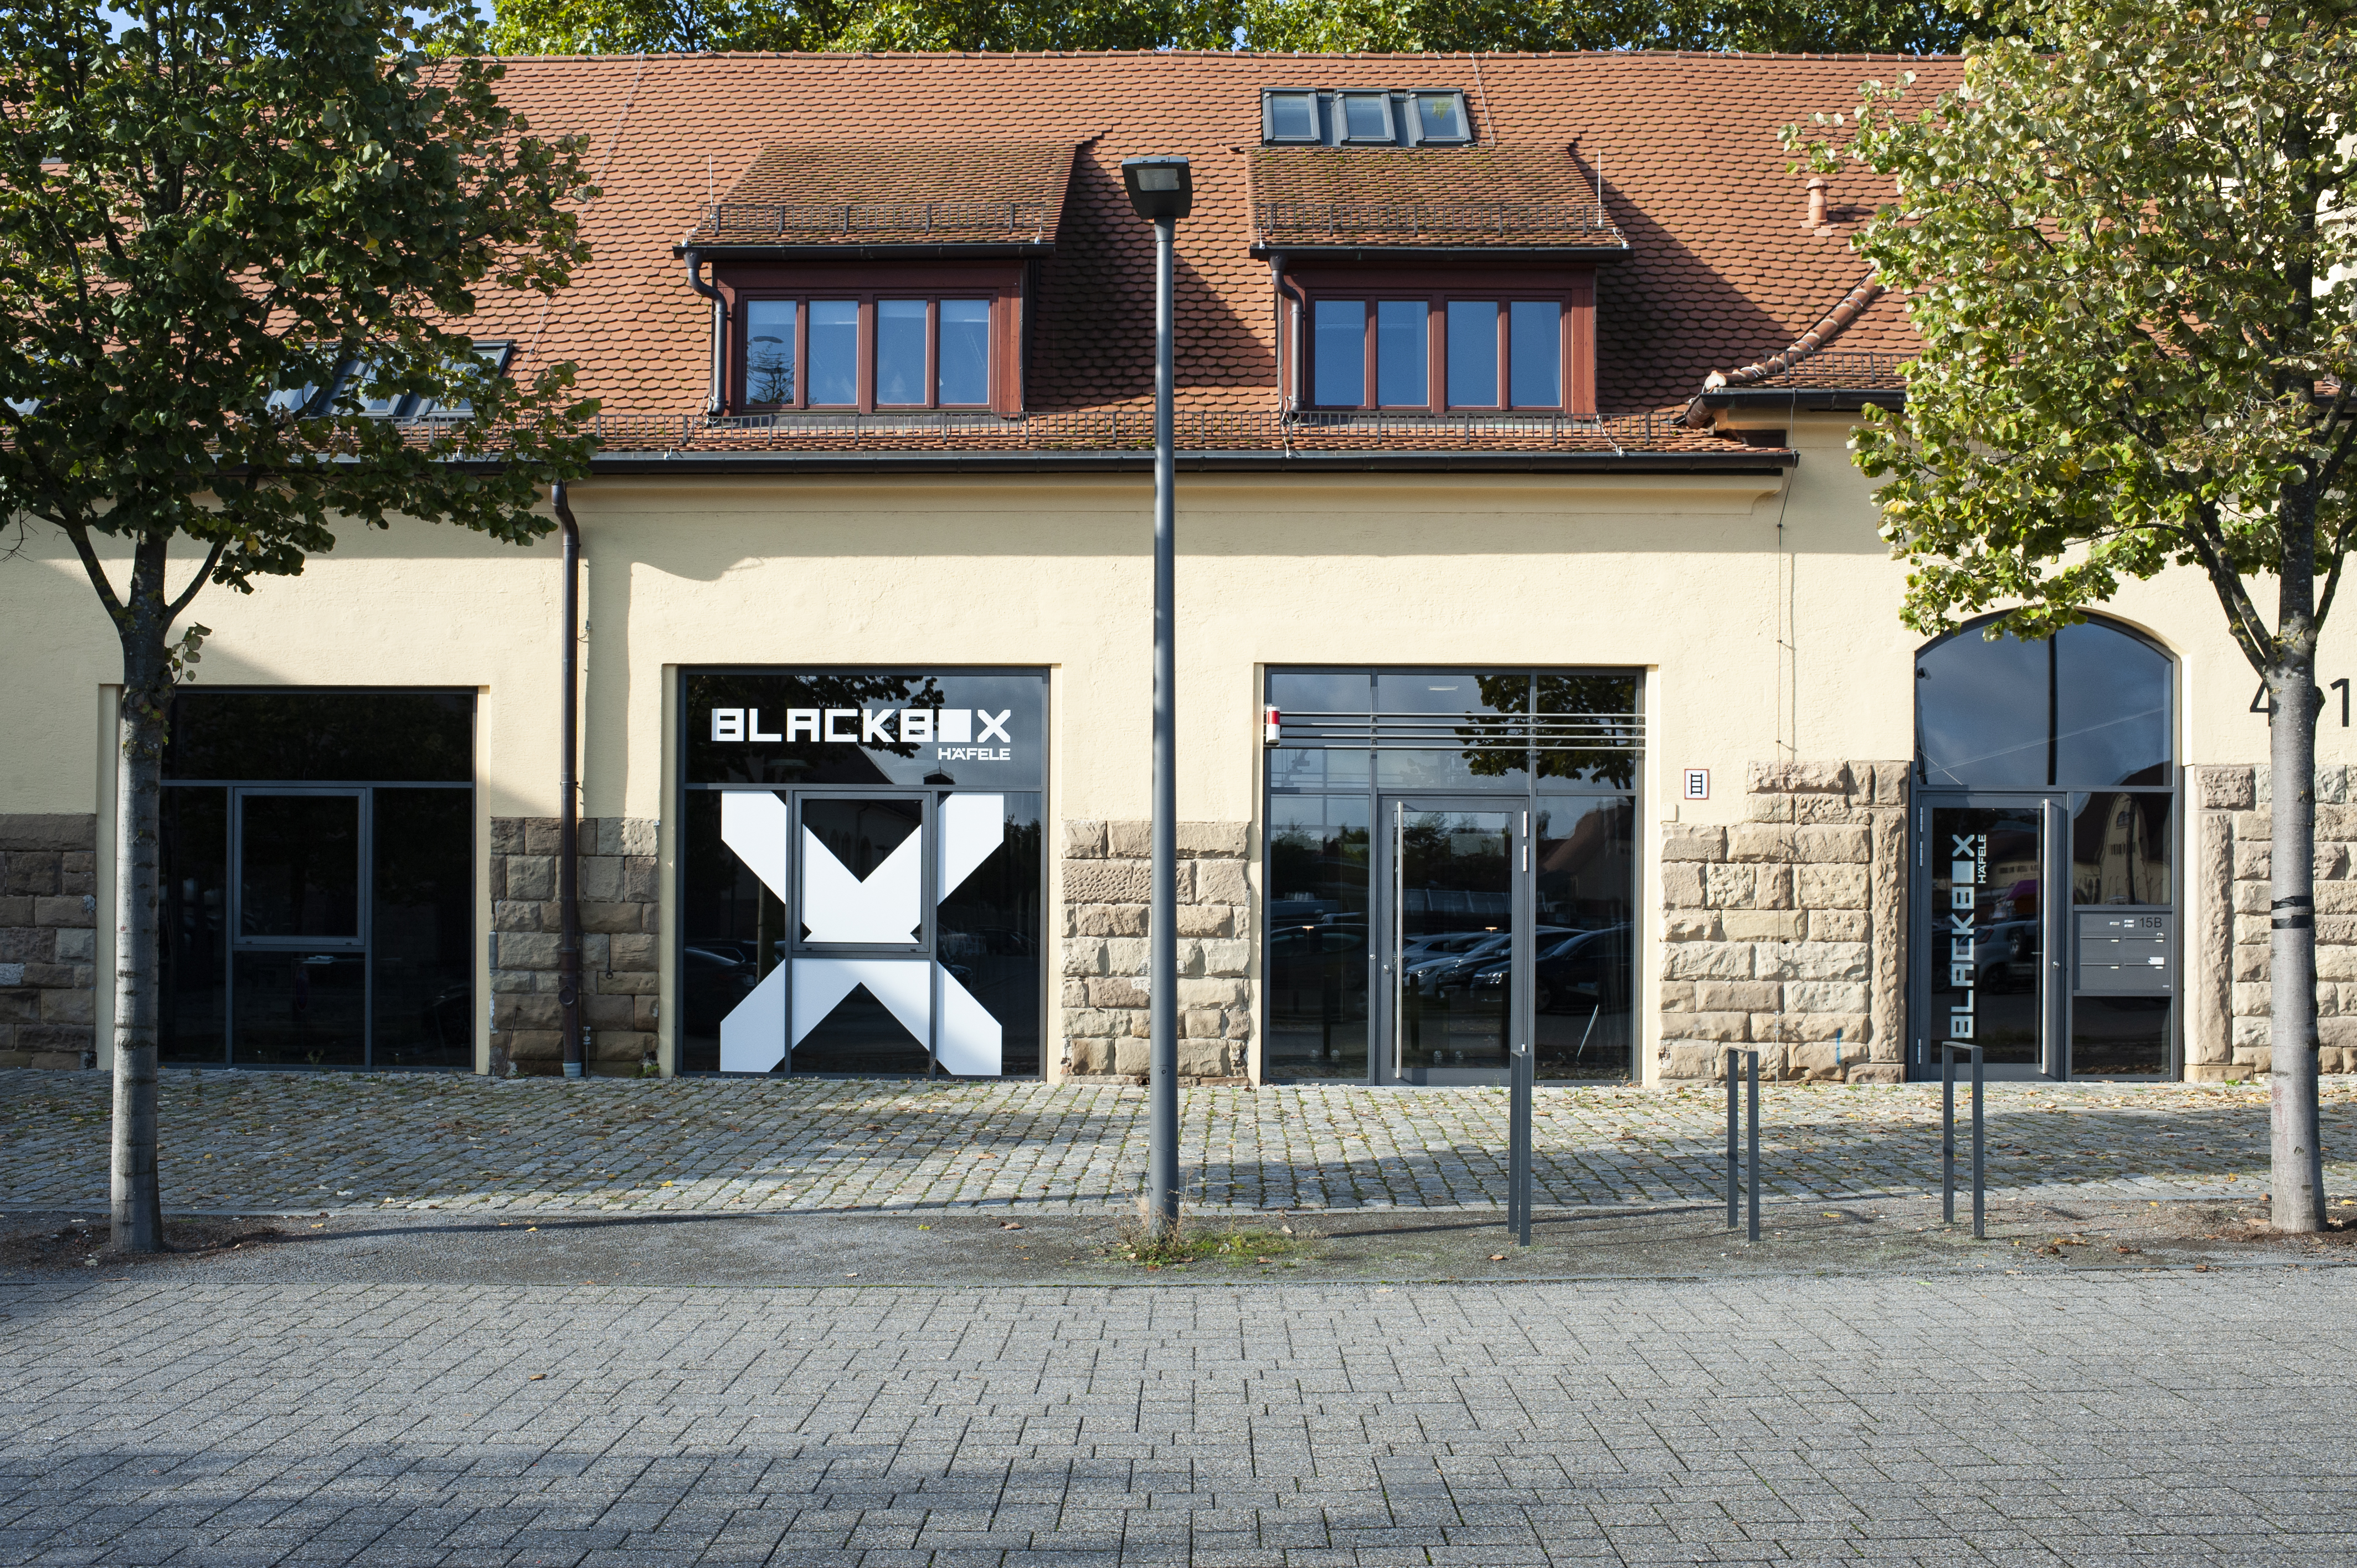 ENTER THE BLACKBOX - Naststraße 15b in the Römerkastell Stuttgart